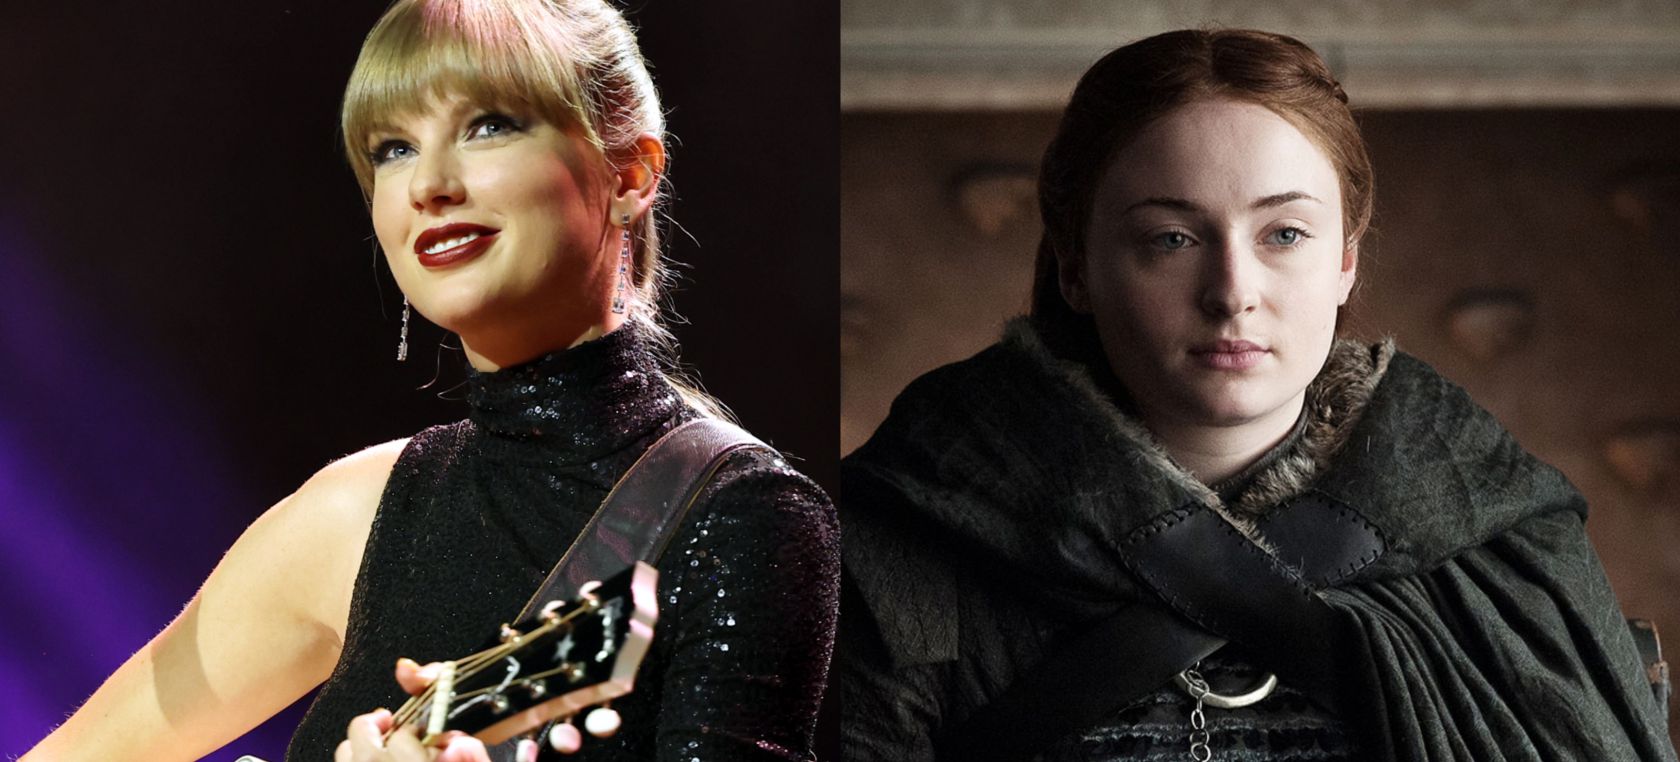 Taylor Swift, Reina del Norte: Este es su guiño involuntario al destino de los Stark en ‘Juego de Tronos’